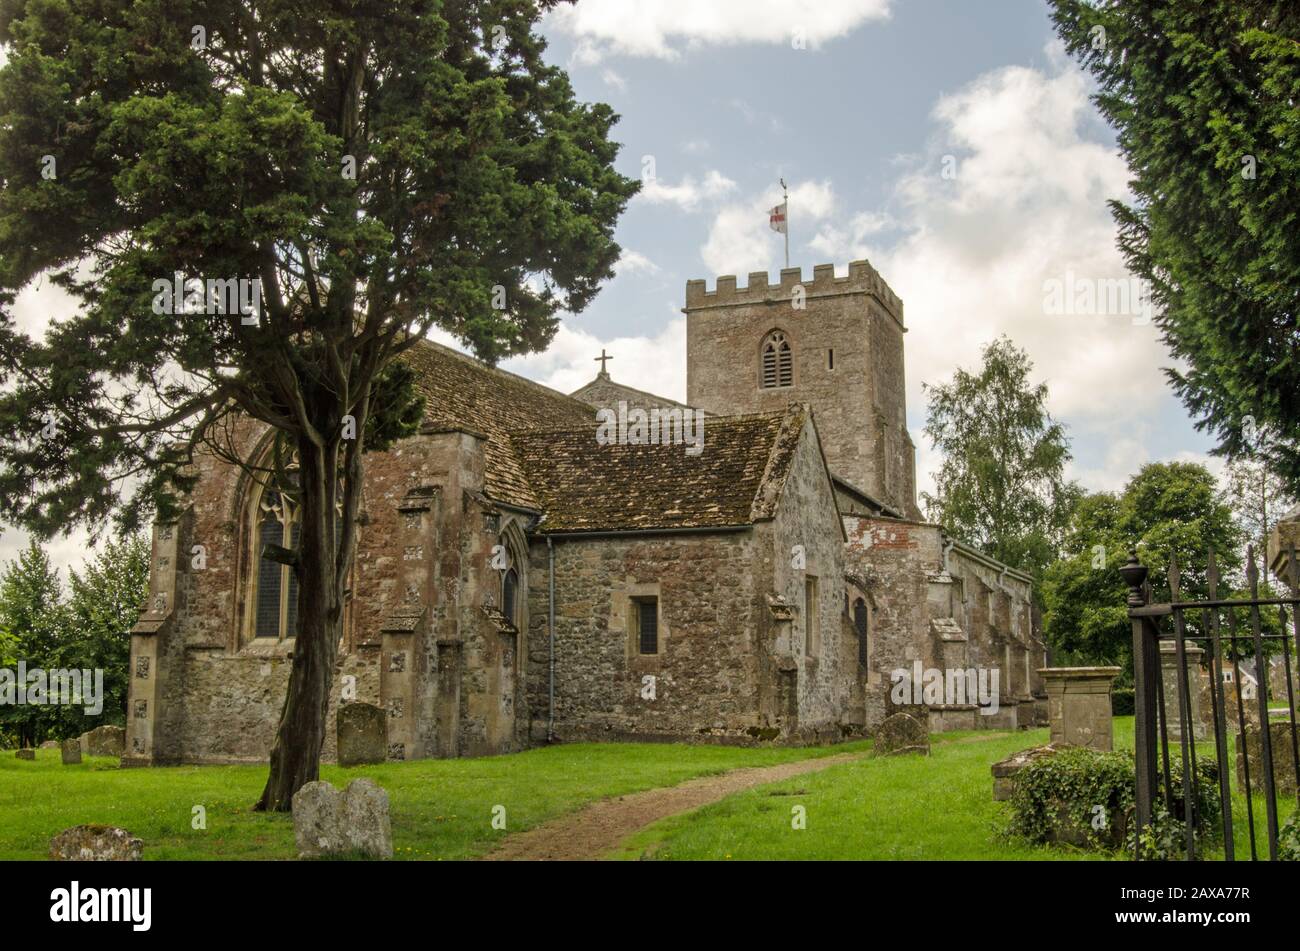 L'église historique de St Mary dans le village de Market Lavington, Wiltshire, Angleterre. Banque D'Images